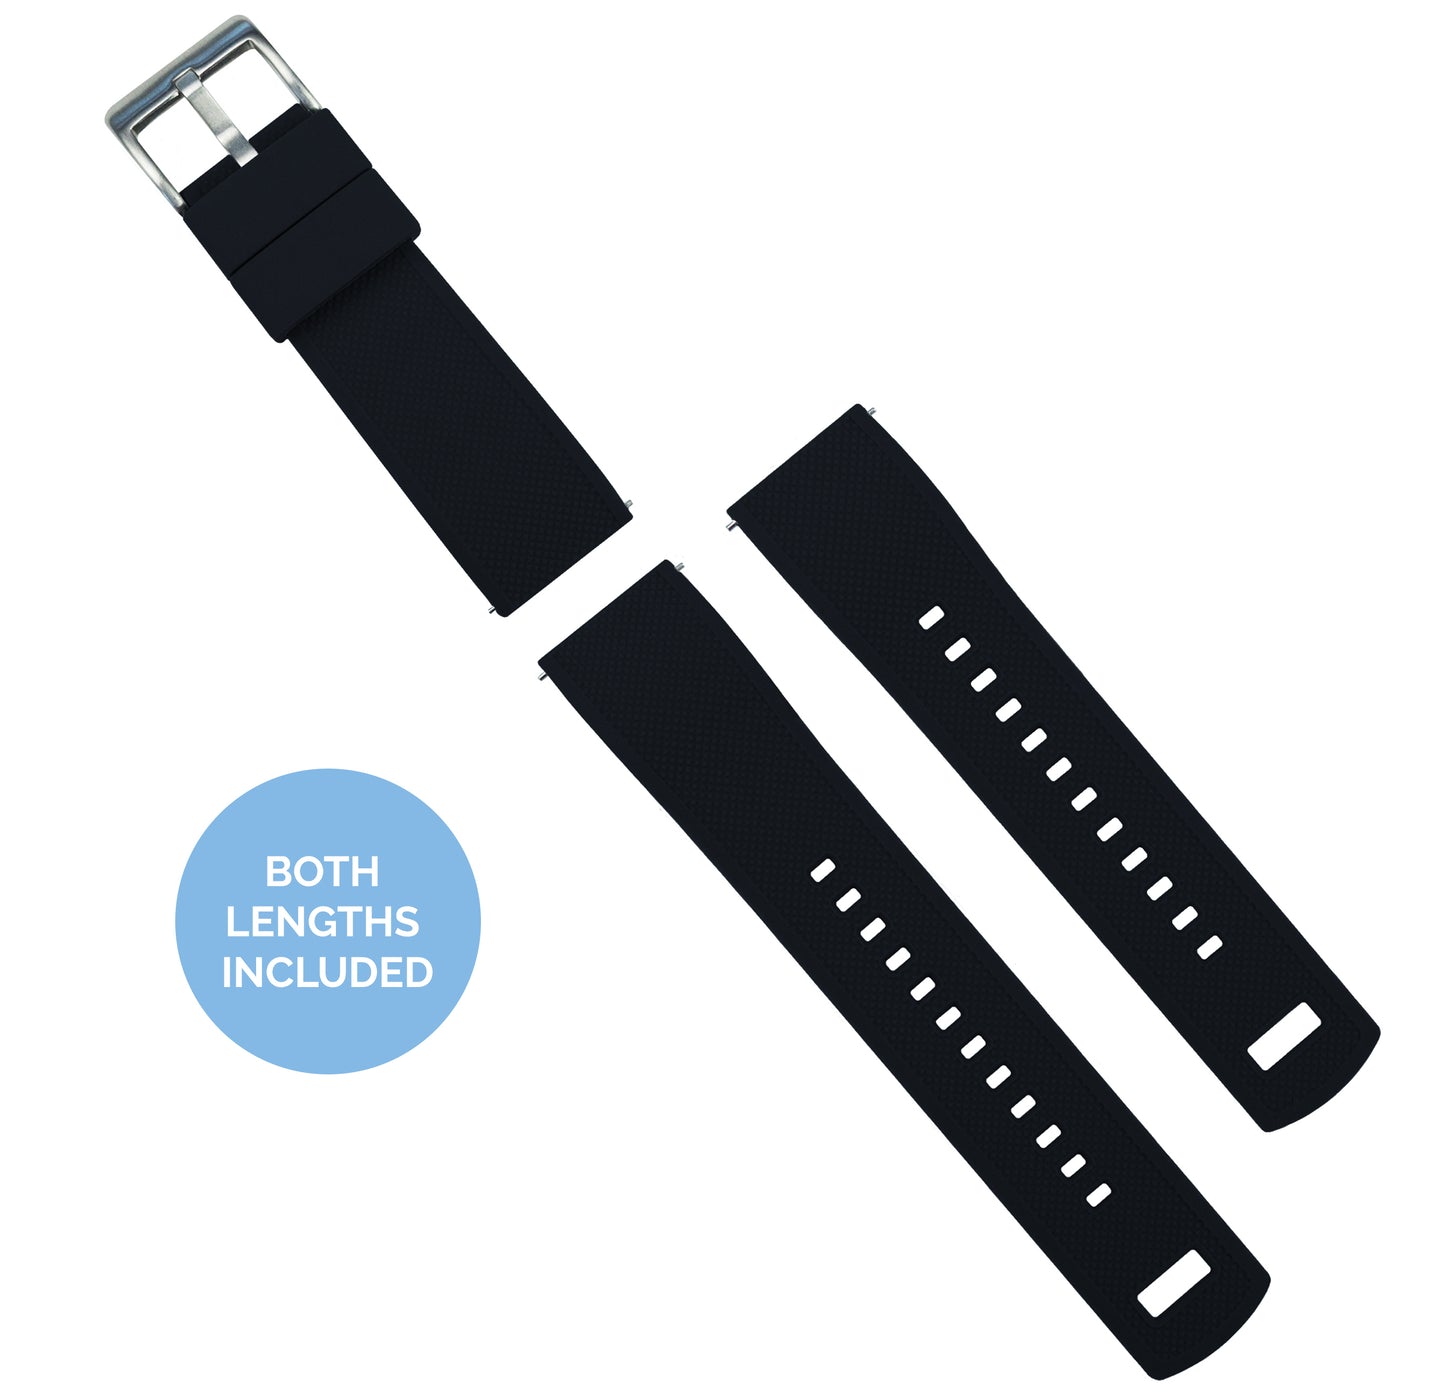 Samsung Galaxy Watch3 Fkm Rubber Black Watch Band